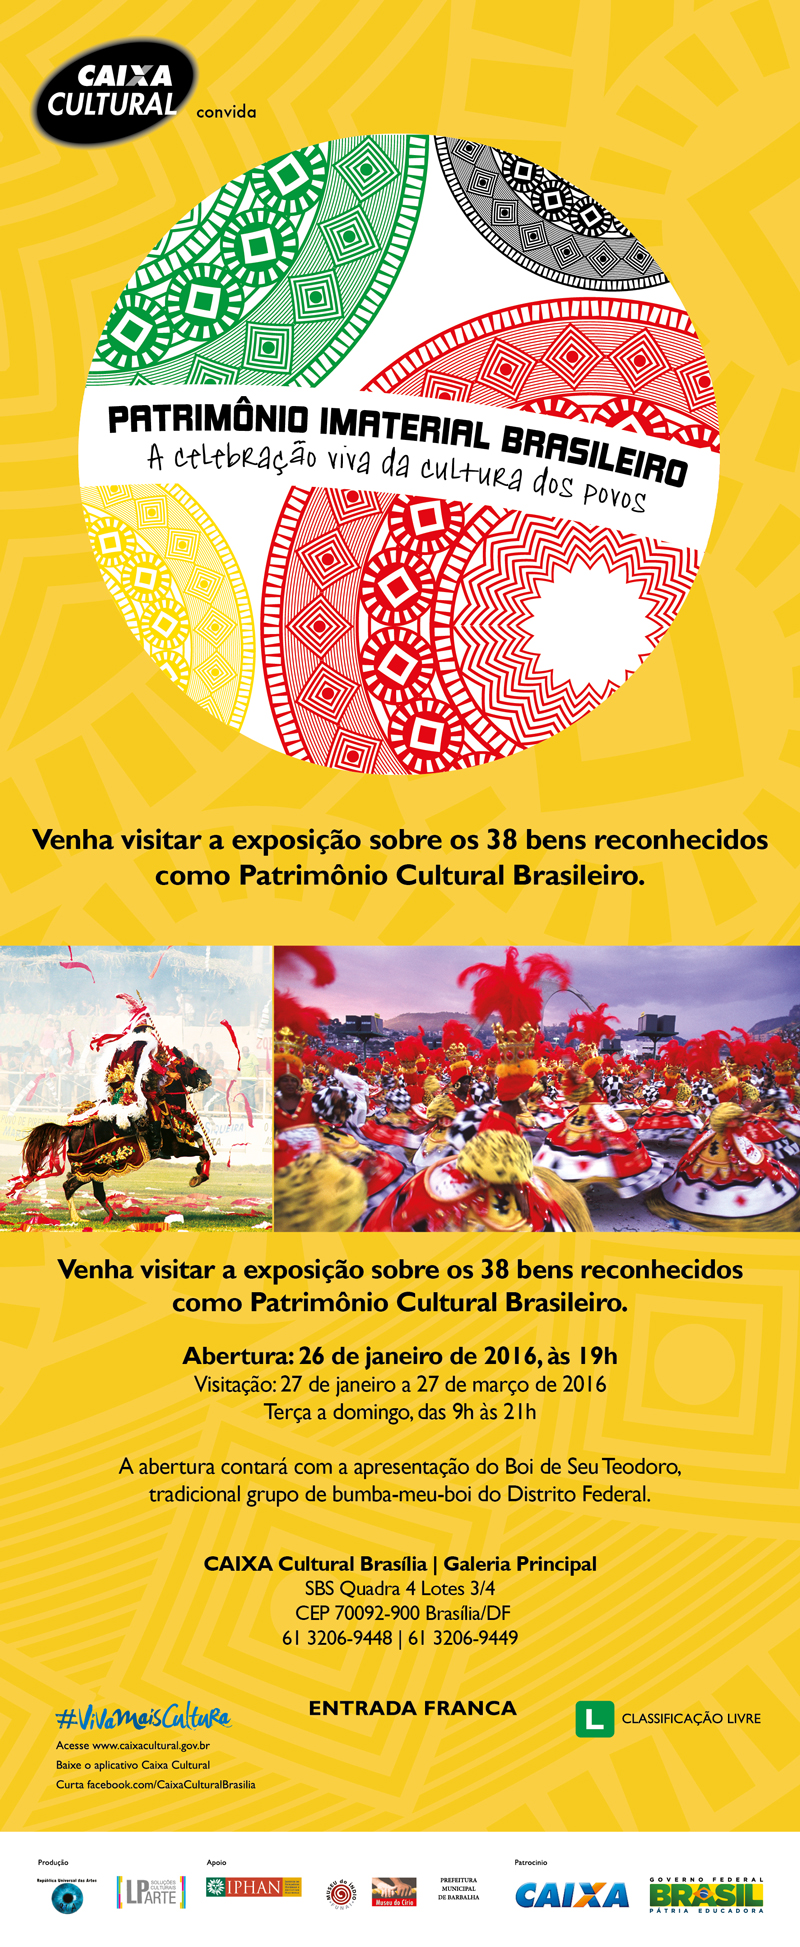 Patrimônio Imaterial Brasileiro - A celebração viva da cultura dos povos.